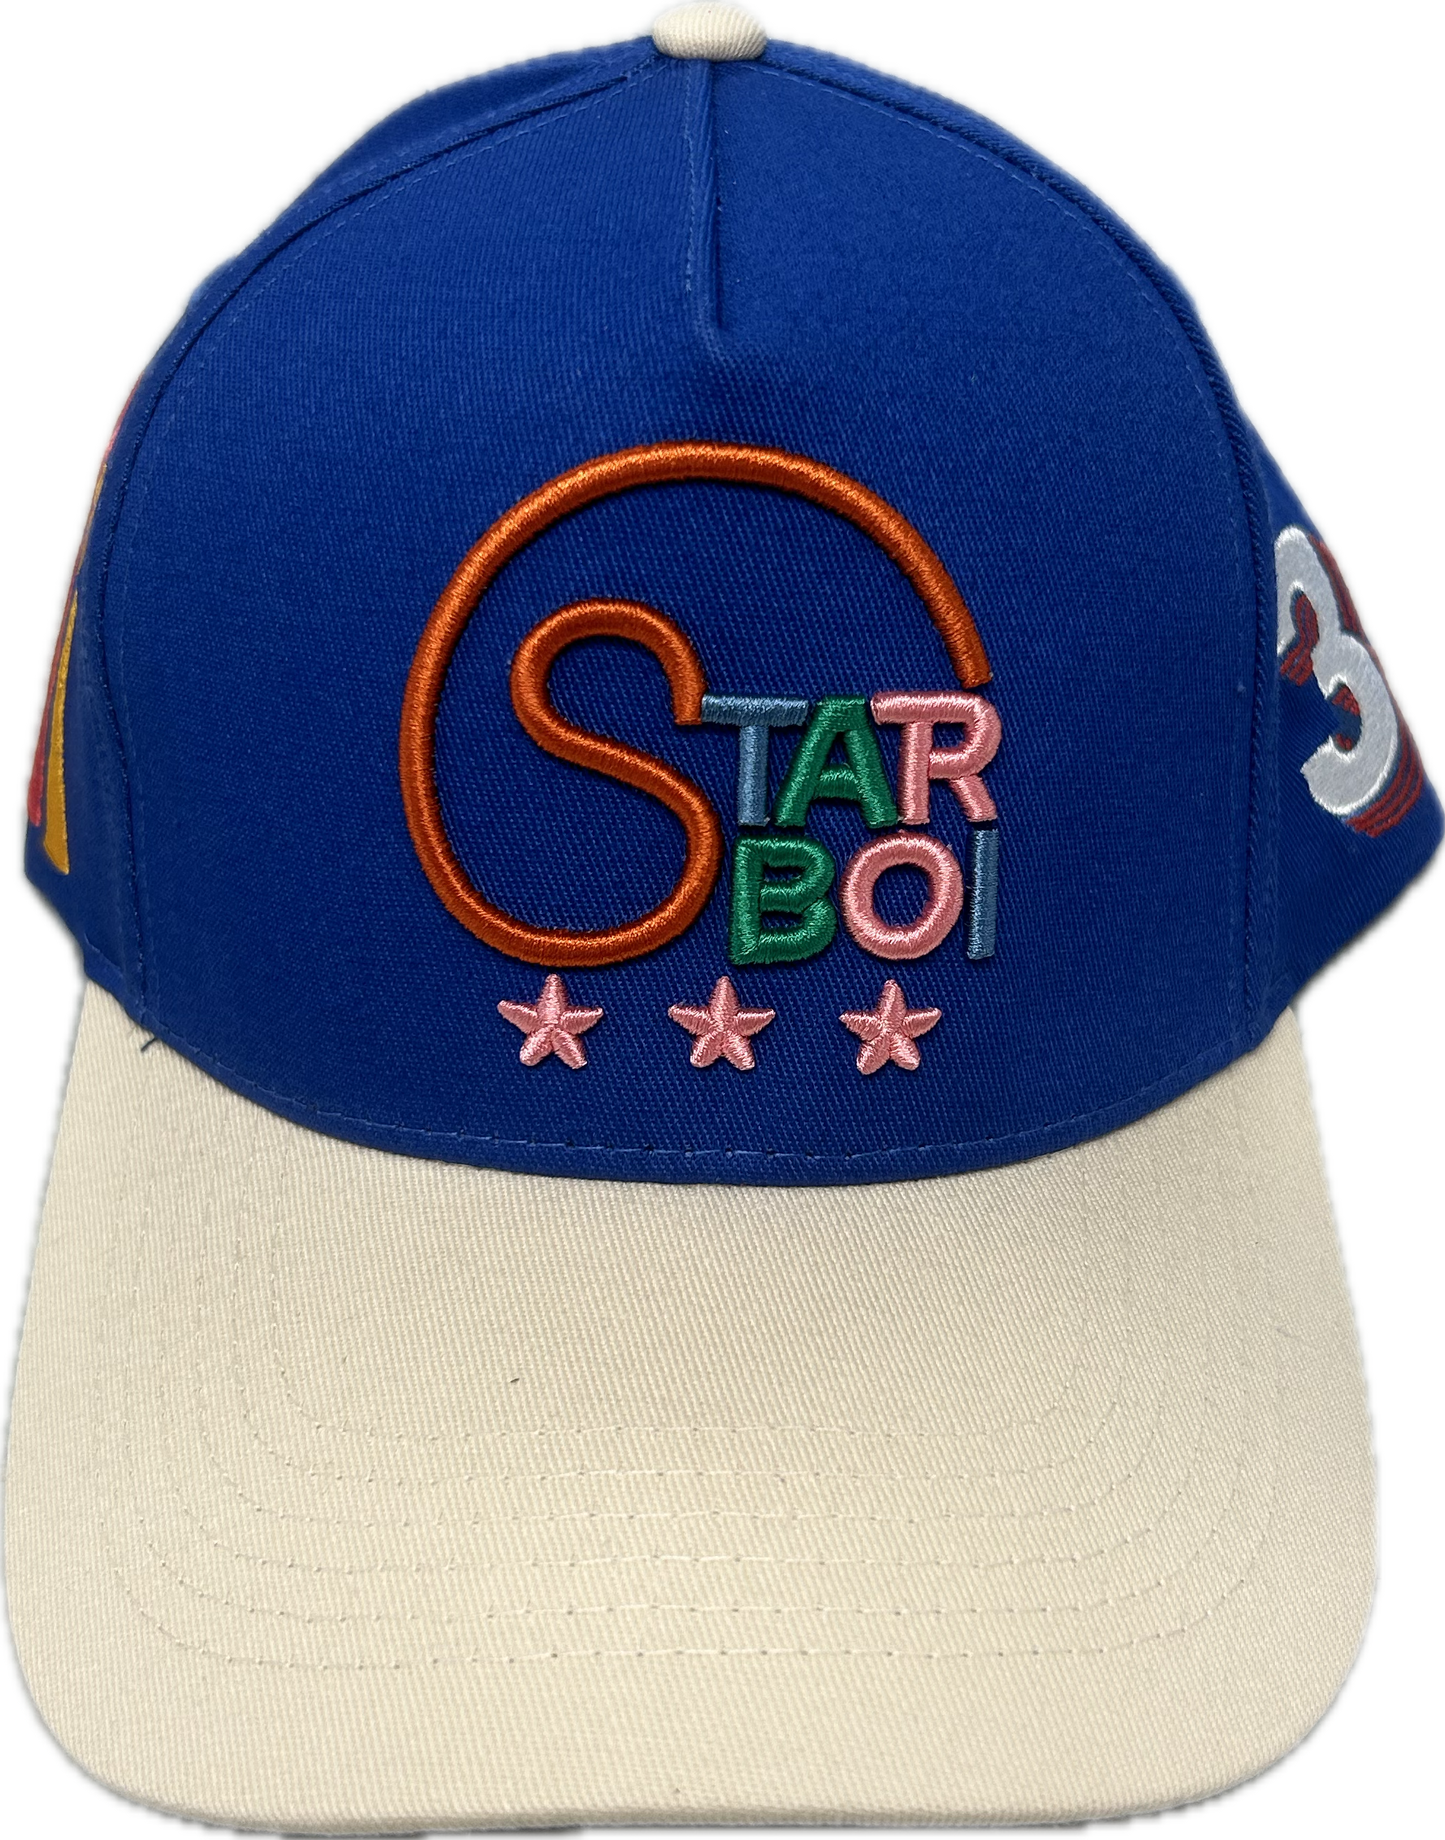 Starboi Blue/White Hat